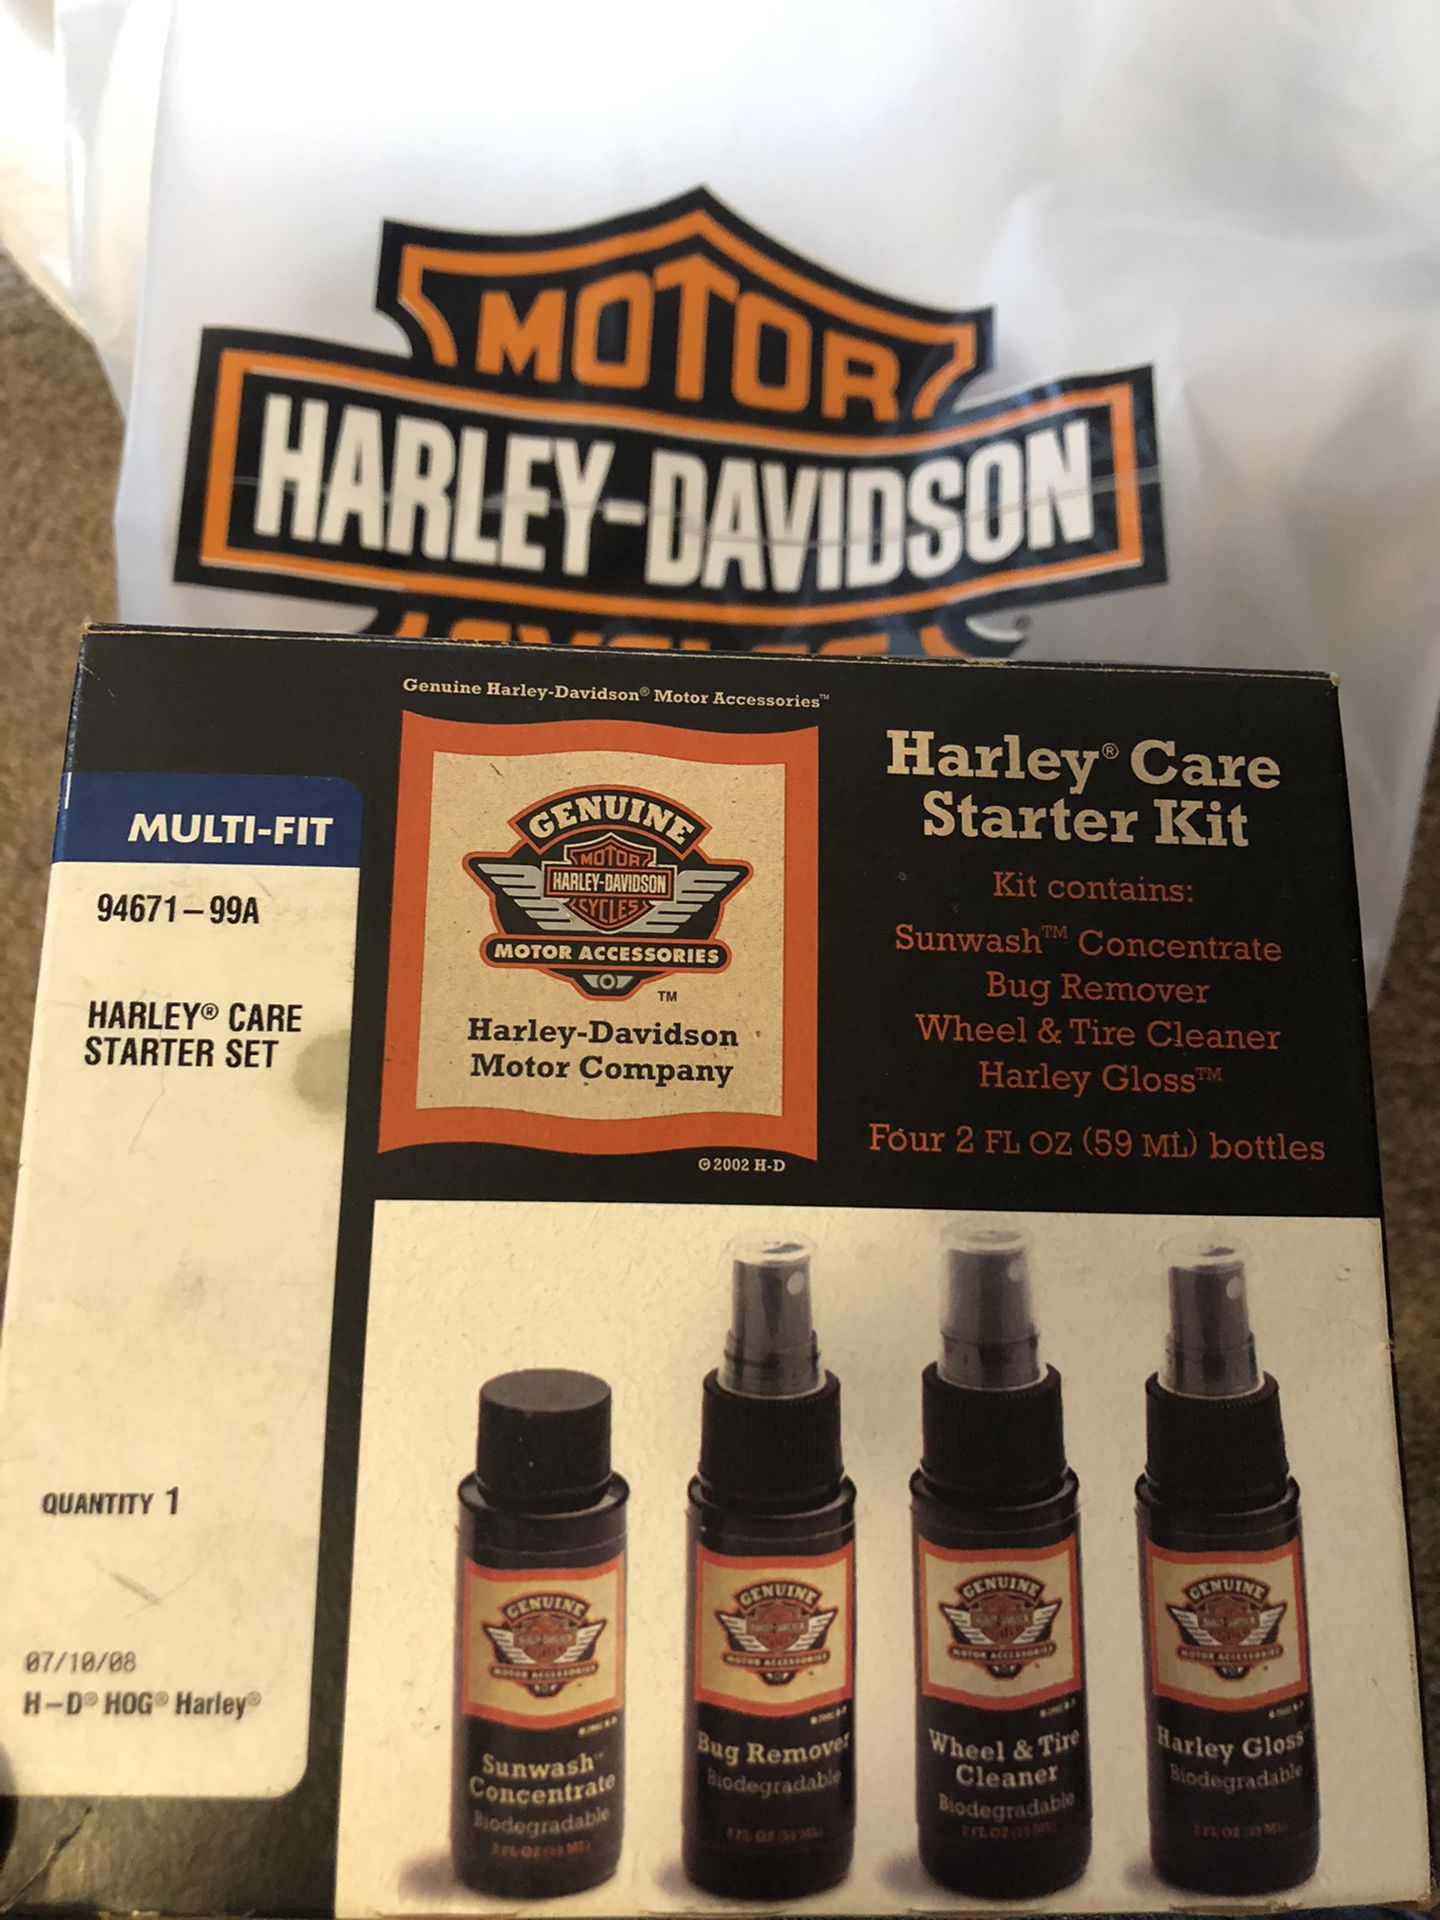 Harley-Davidson detailing kit